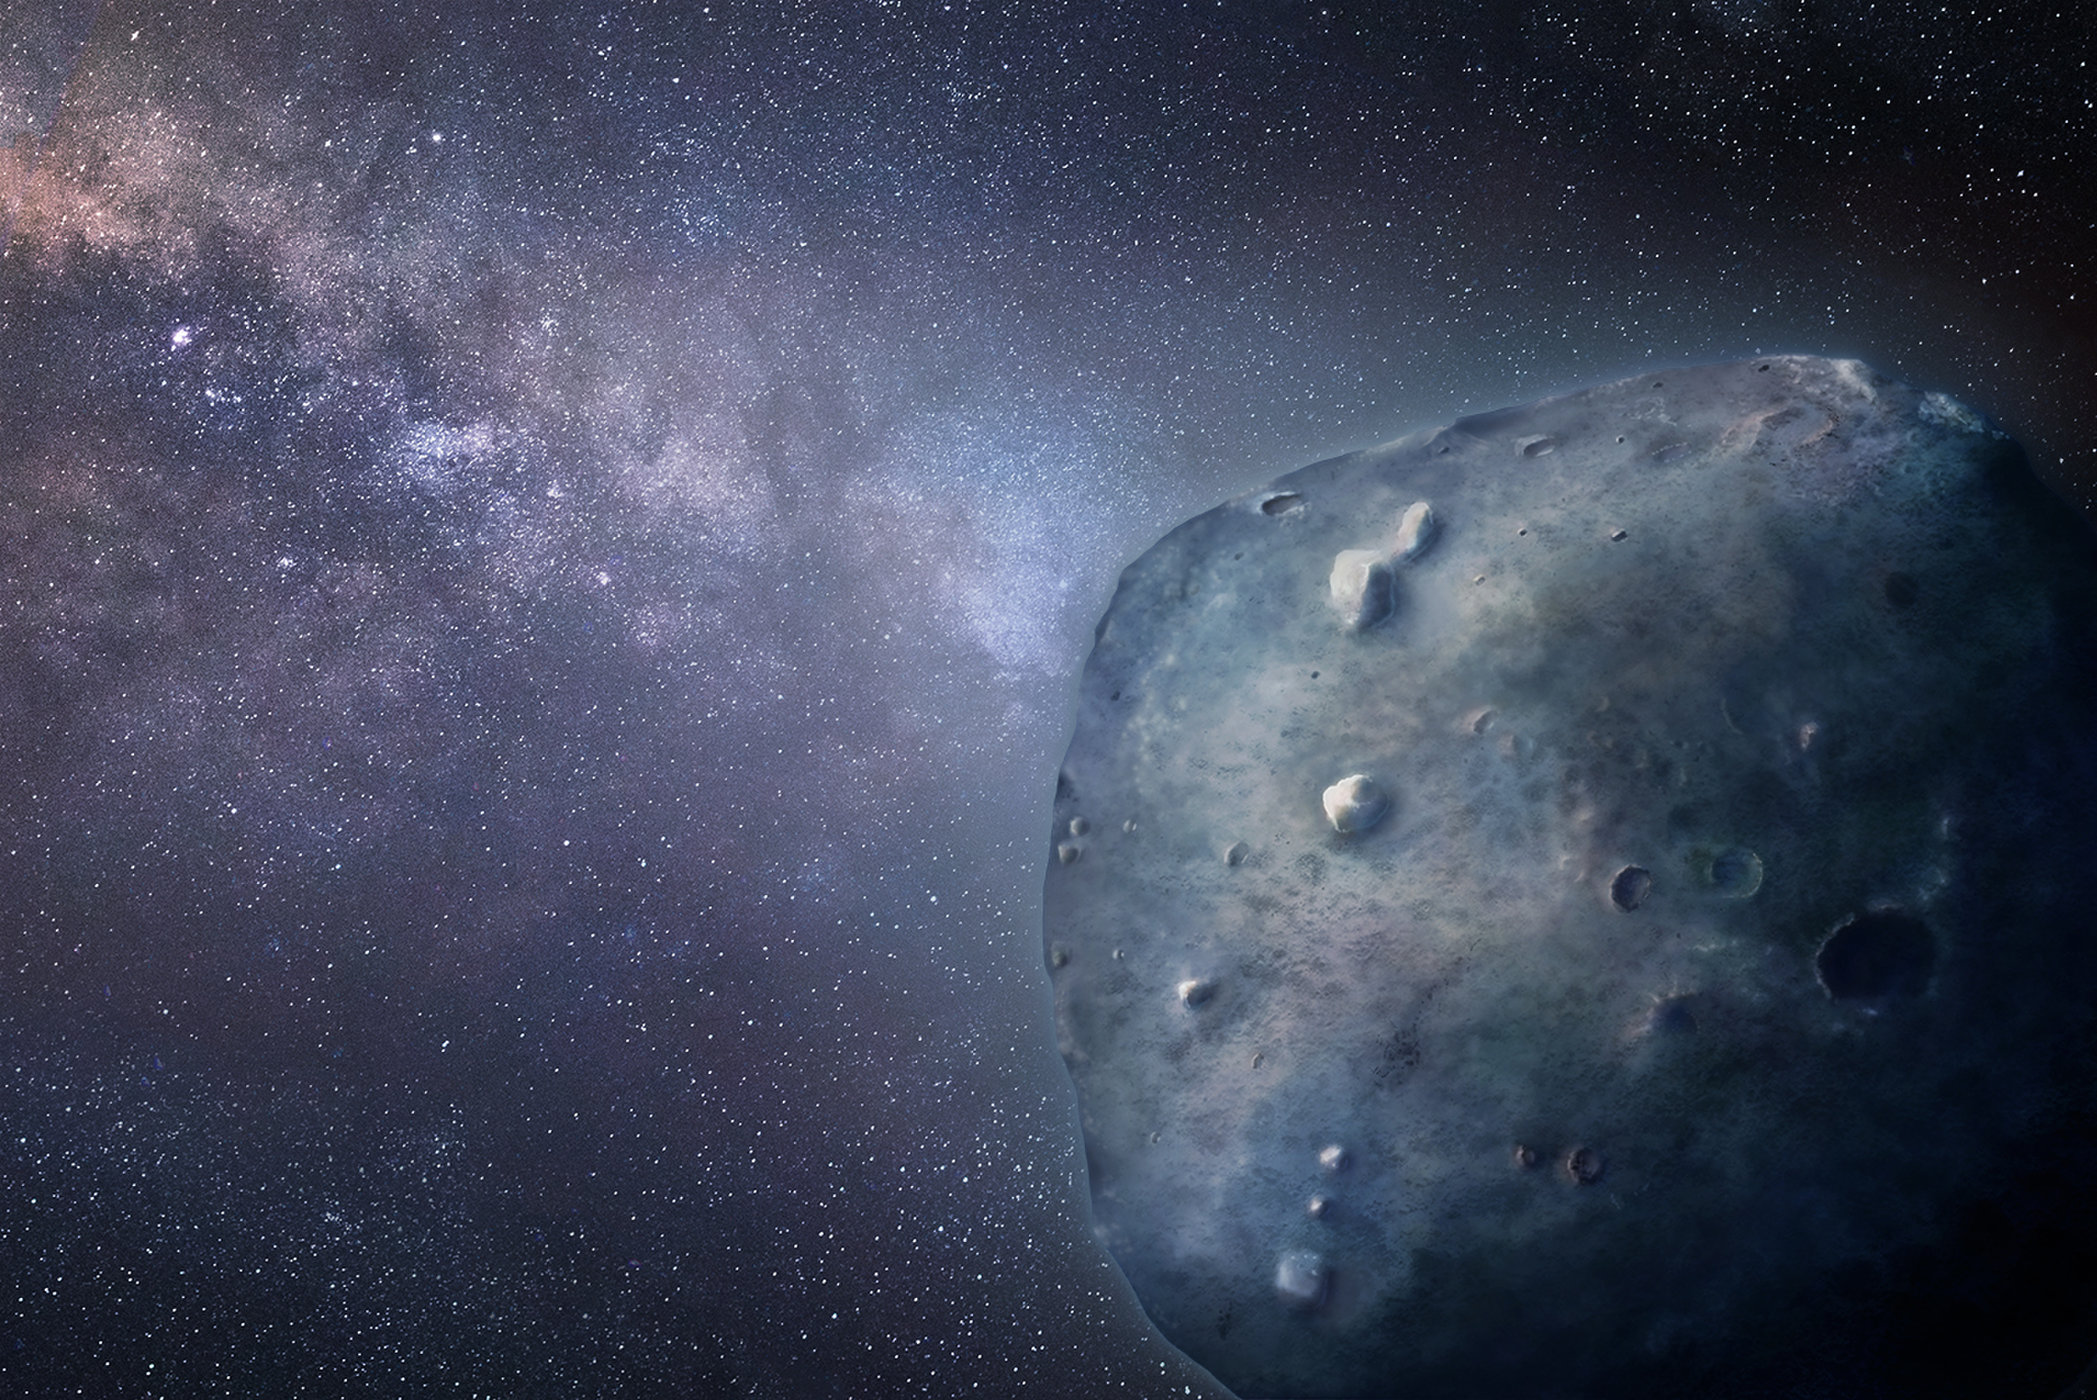 Künstlerische Darstellung des blauen Asteroiden 3200 Phaethon. Bild: Heather Roper/University of Arizona